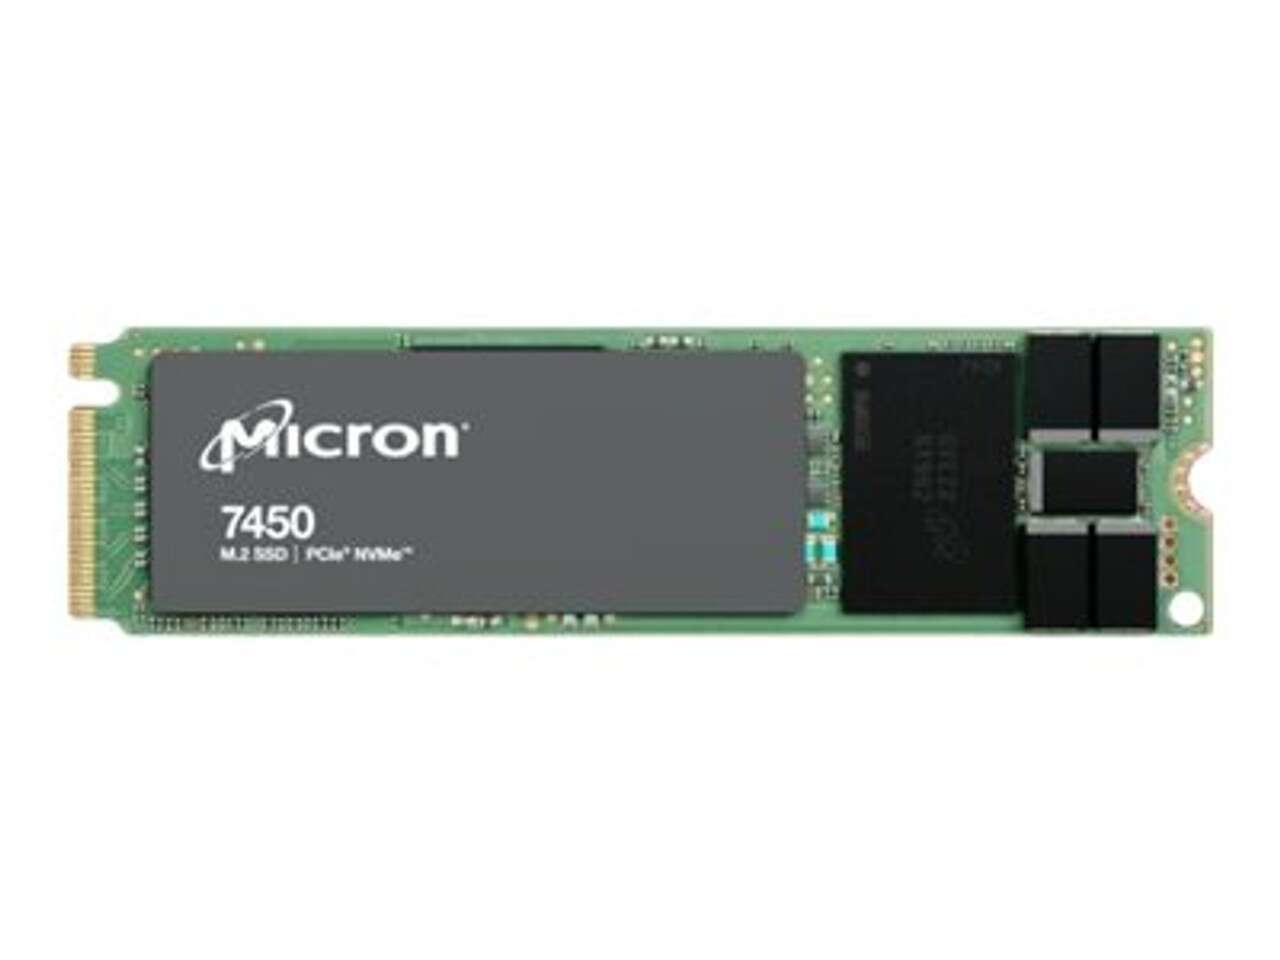 Micron 480gb 7450 pro m.2 nvme pcie ssd